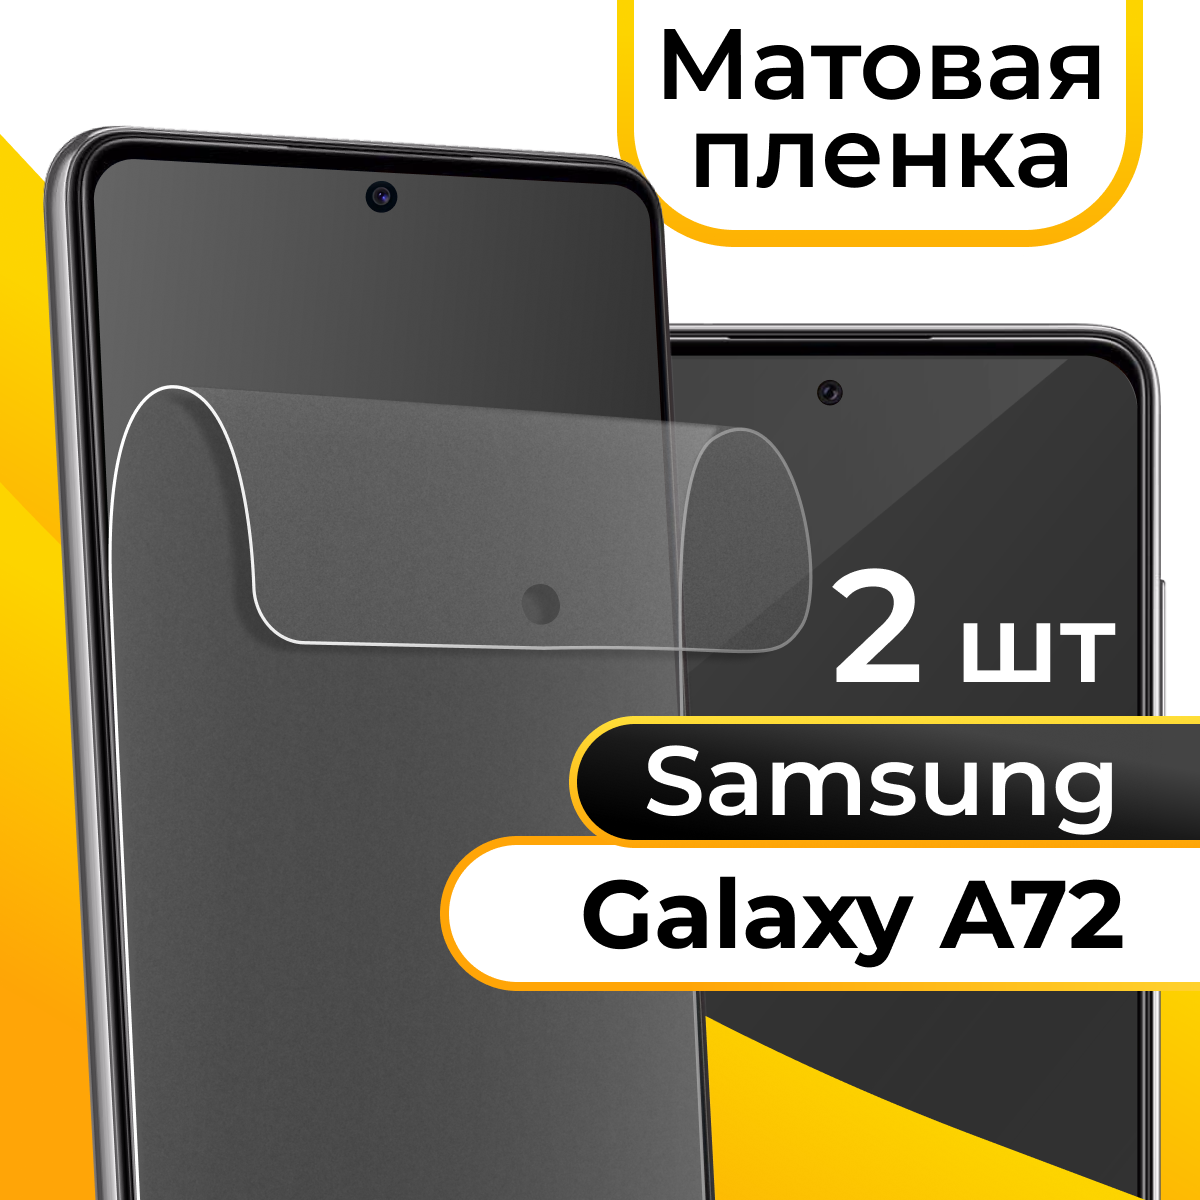 Комплект 2 шт. Матовая пленка для смартфона Samsung Galaxy A72 / Защитная противоударная пленка на телефон Самсунг Галакси А72 / Гидрогелевая пленка